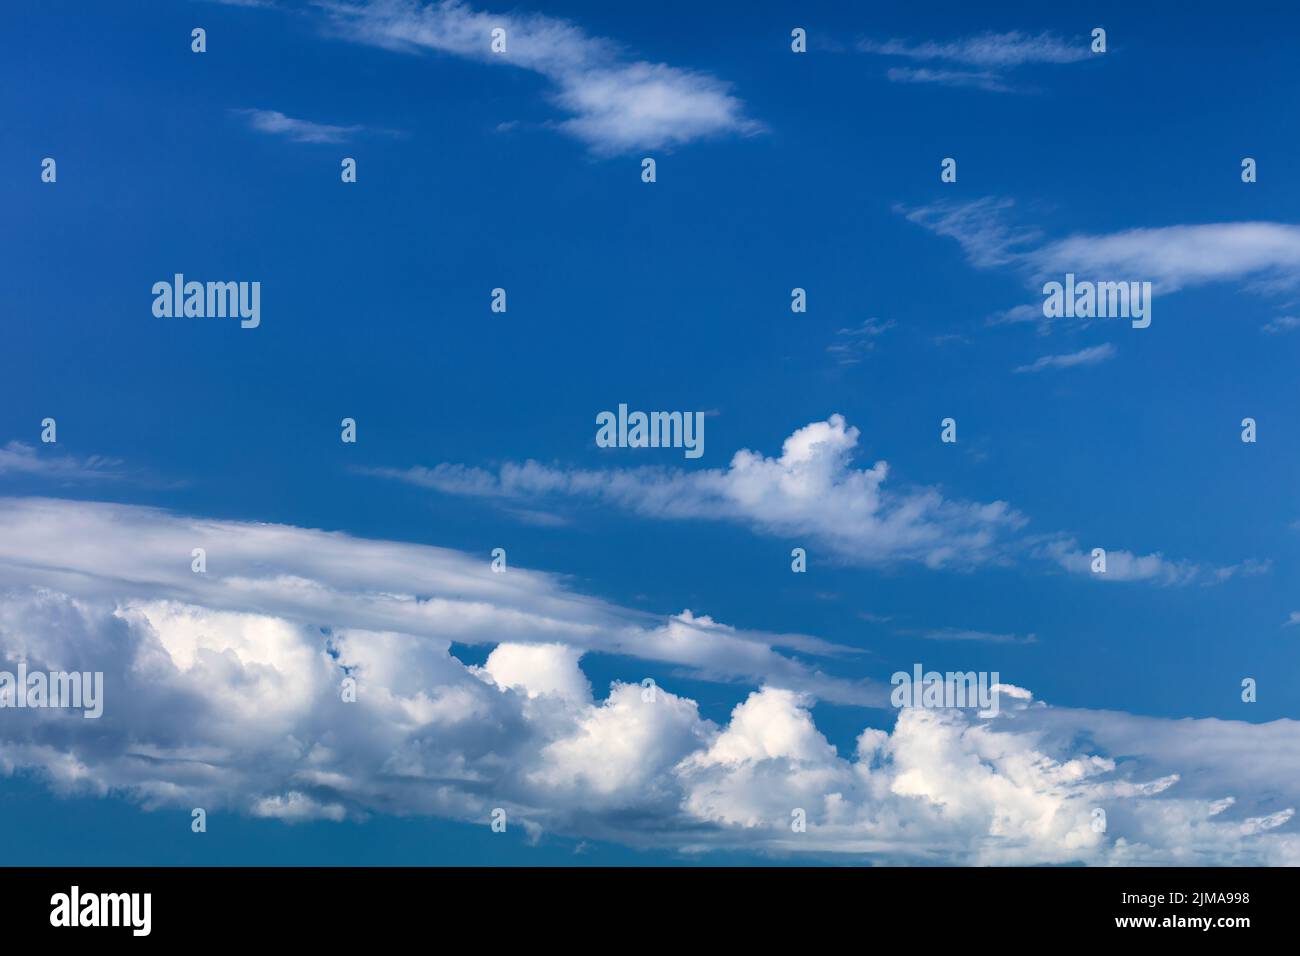 Cielo de fondo con cielos de color azul oscuro y nubes blancas Foto de stock